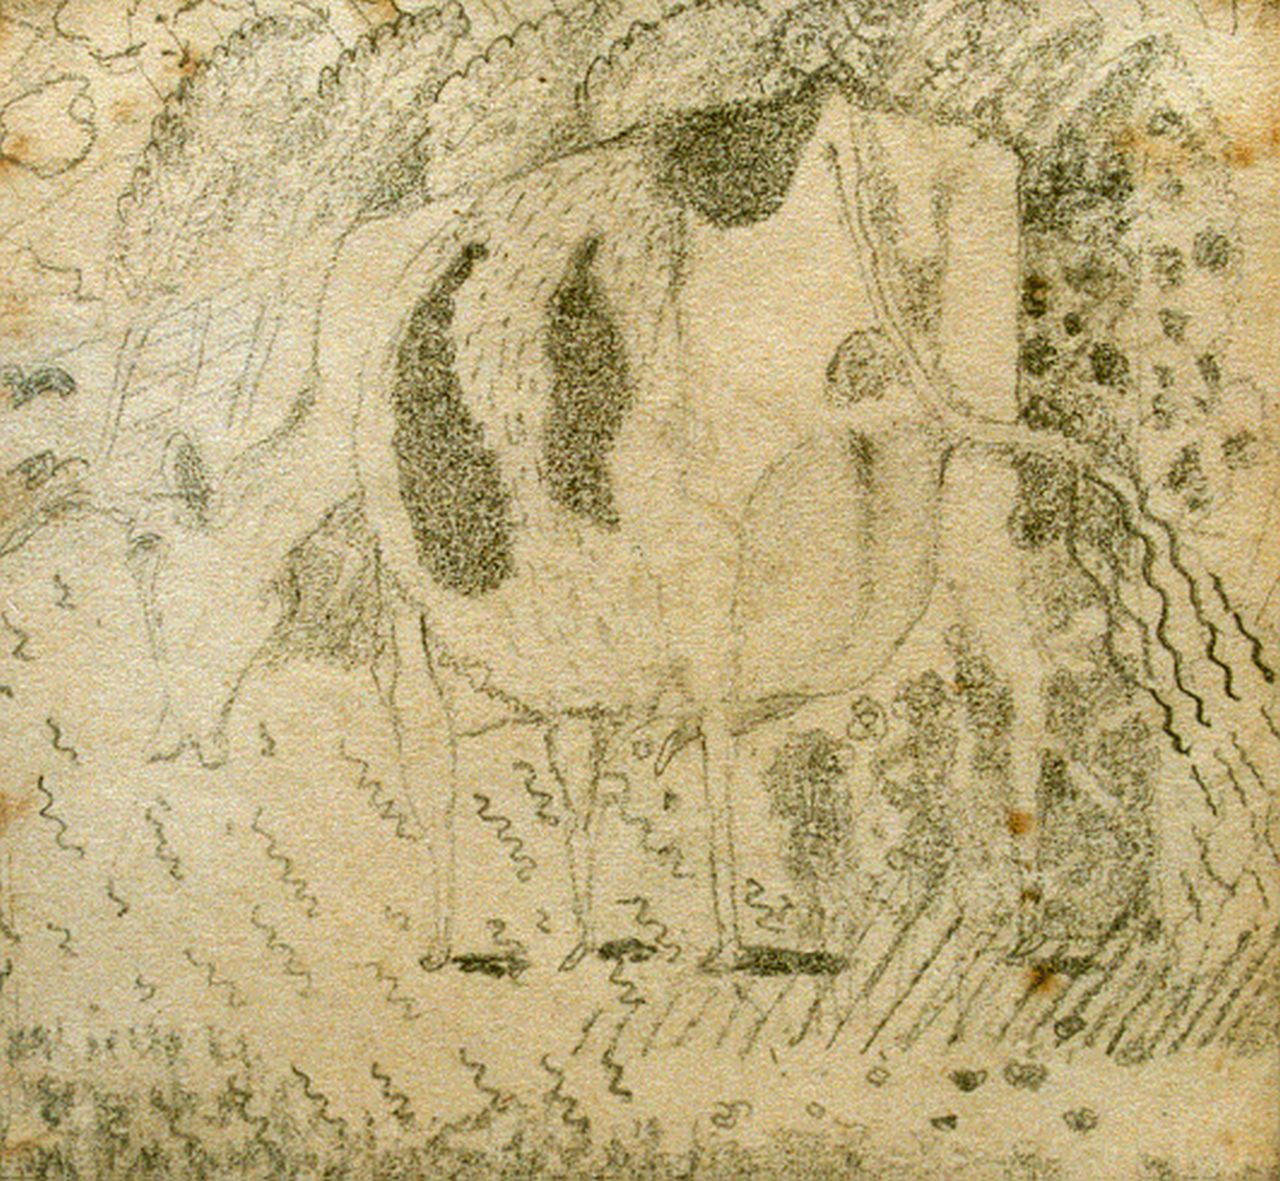 Kruyder H.J.  | 'Herman' Justus Kruyder, Grazing cow, Bleistift auf Papier 11,3 x 11,0 cm, signed l.r. und dated 1927